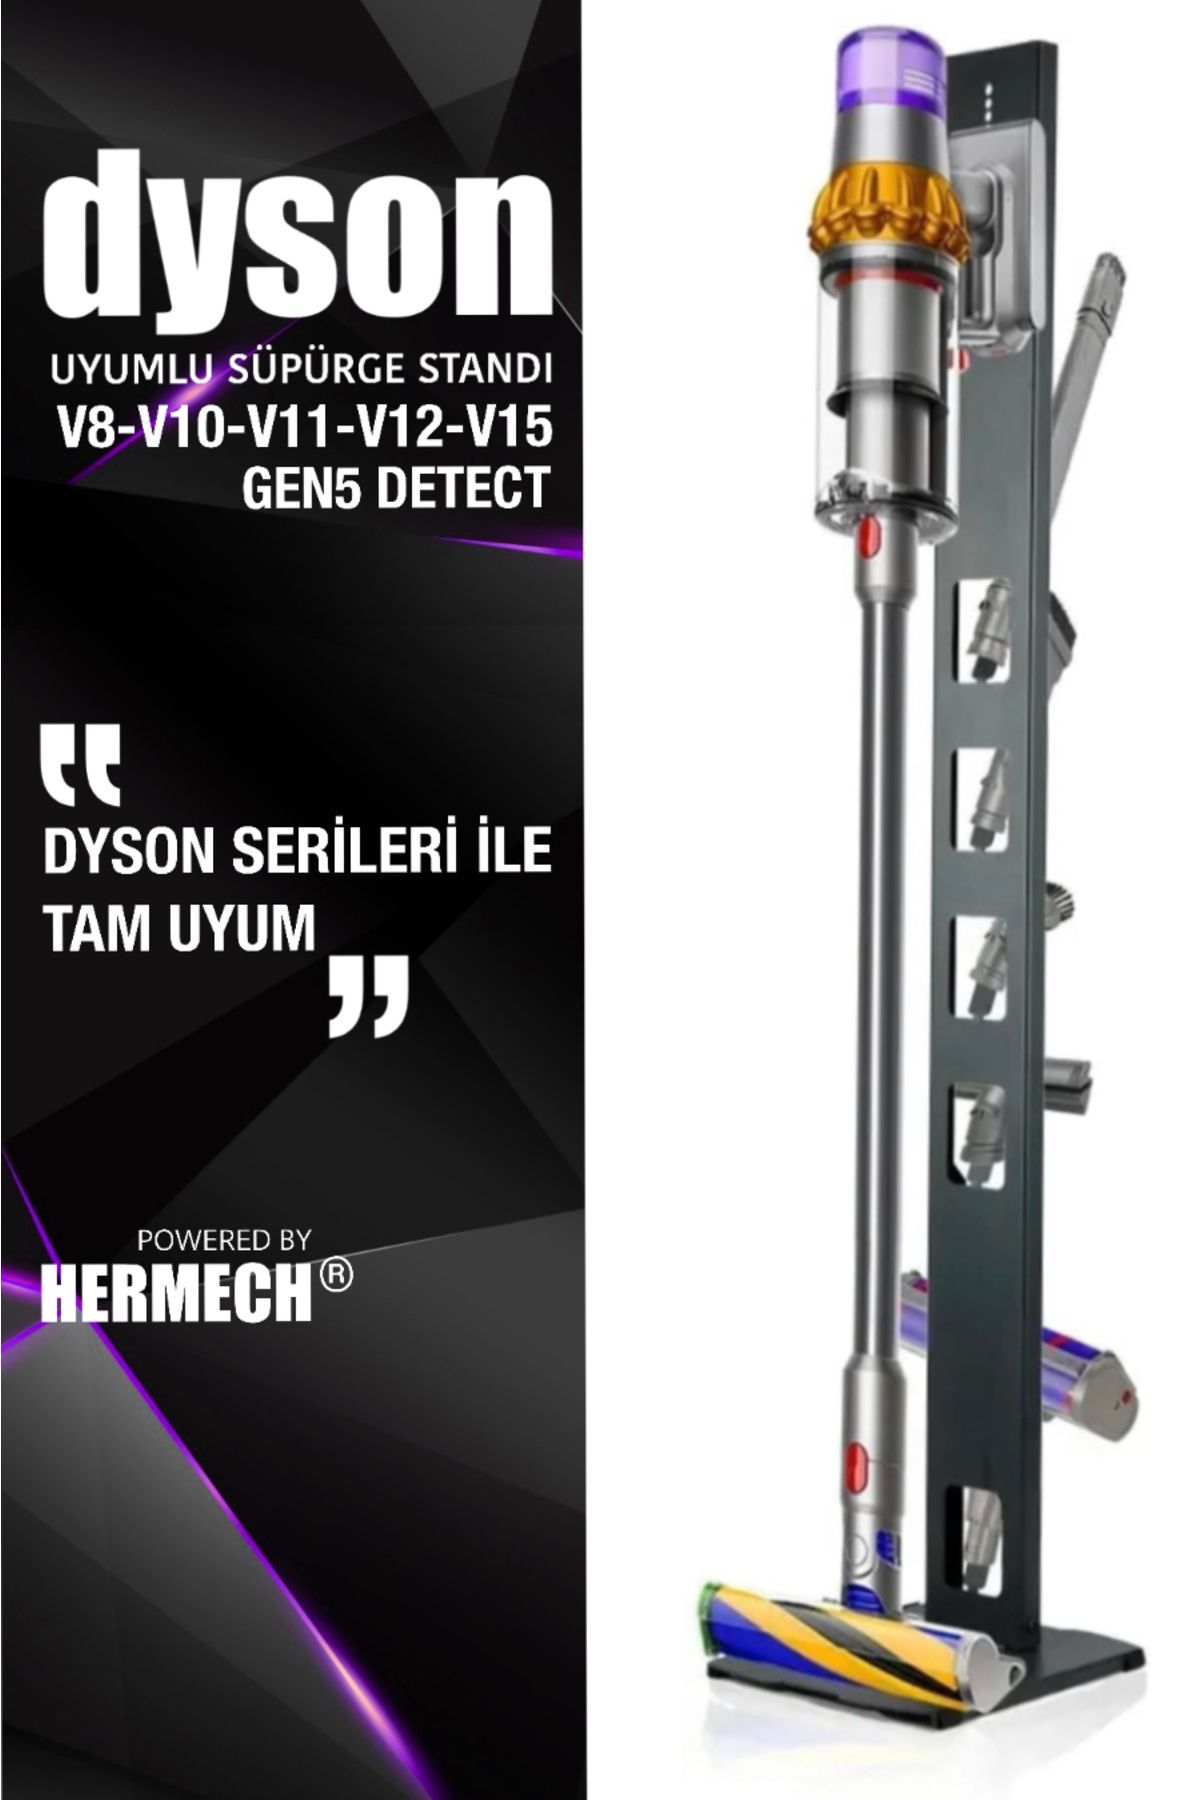 hermech Dyson V Serileri Gen5 Uyumlu Süpürge Standı